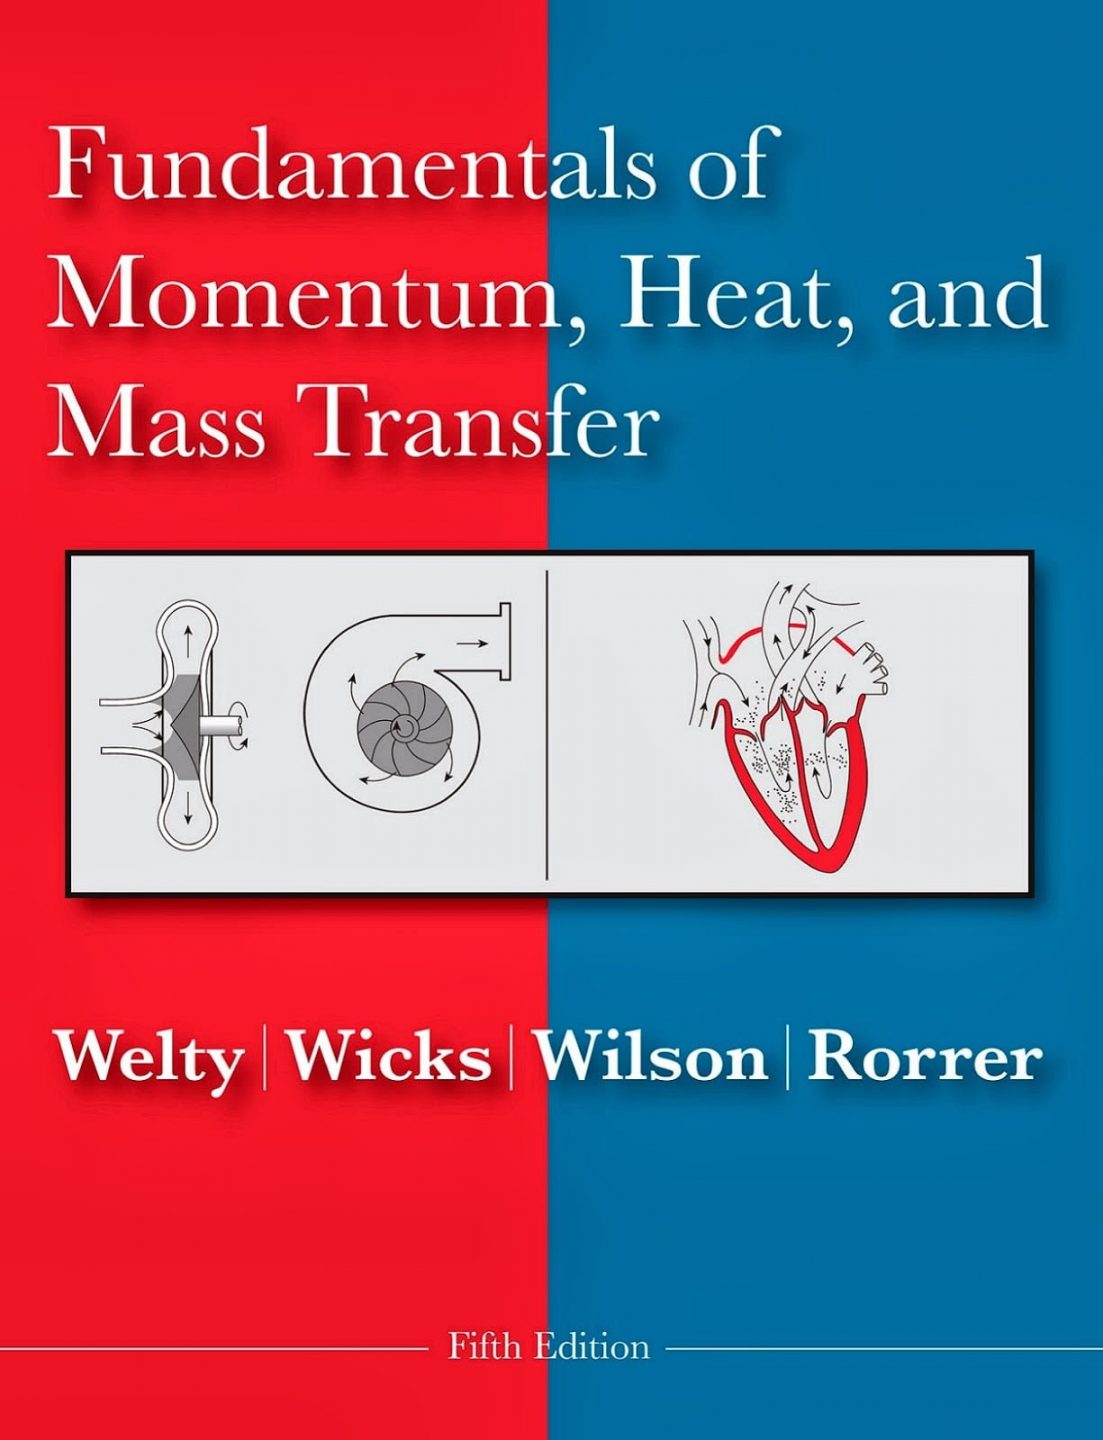 Fundamentos de Transferencia de Momento, Calor y Masa 5 Edición James R. Welty PDF